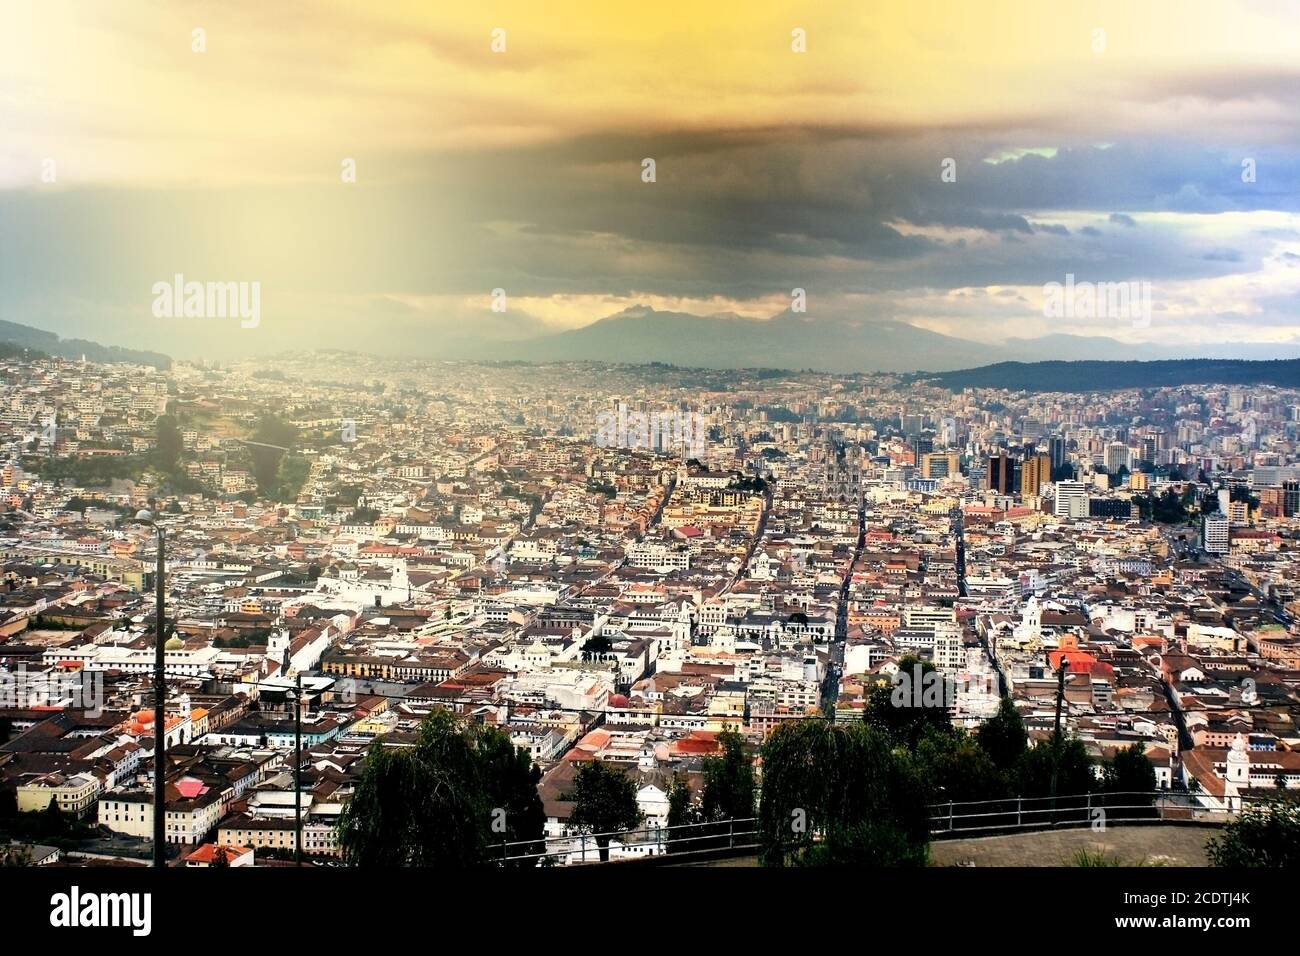 Evening view of Quito, Ecuador Stock Photo